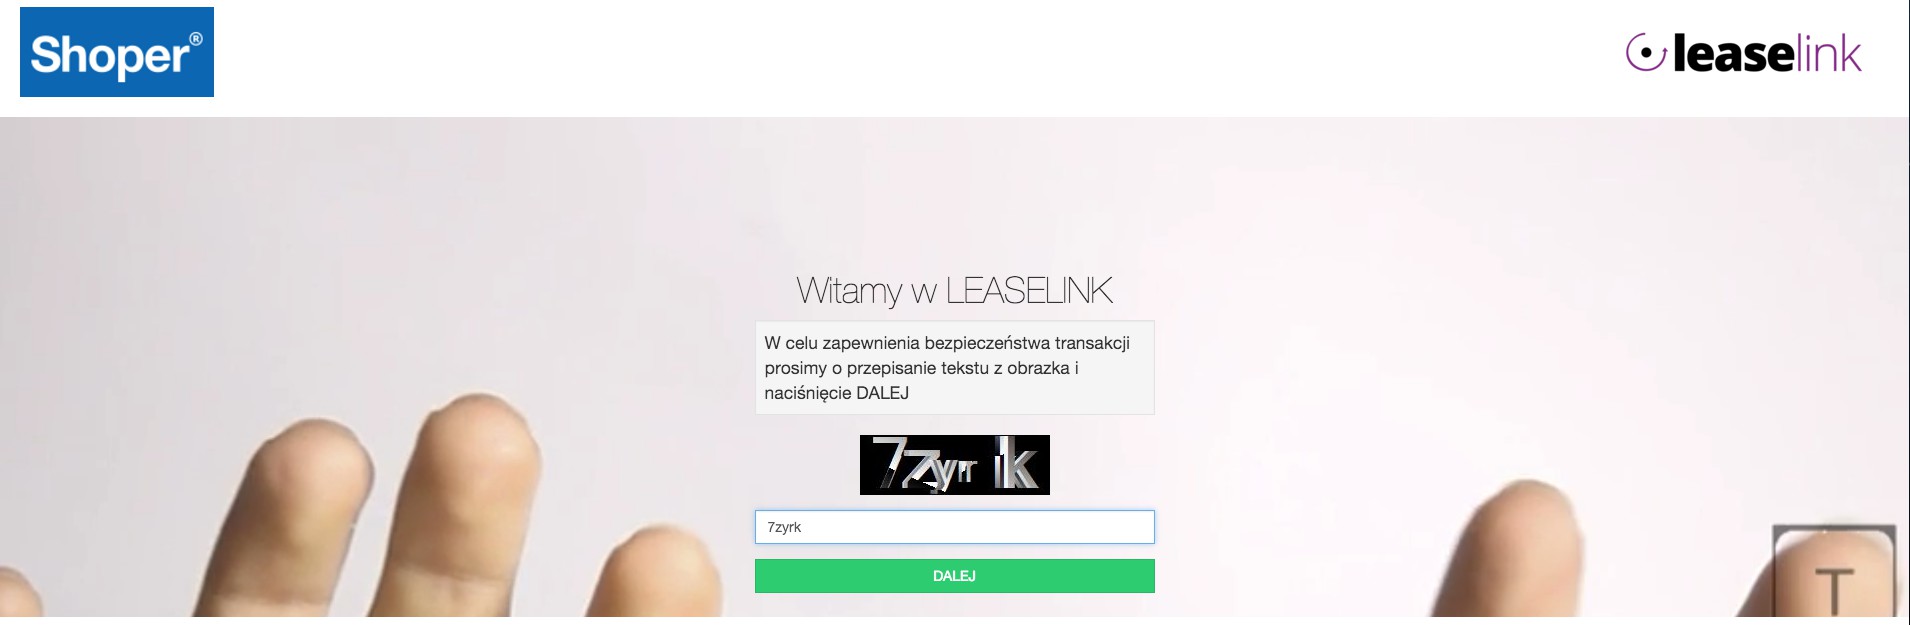 Po złożeniu zamówienie jest przez moment przetwarzane, następnie użytkownik jest przekierowany do strony LeaseLink (przekierowanie następuje również po kliknięciu odnośnika z e-maila).